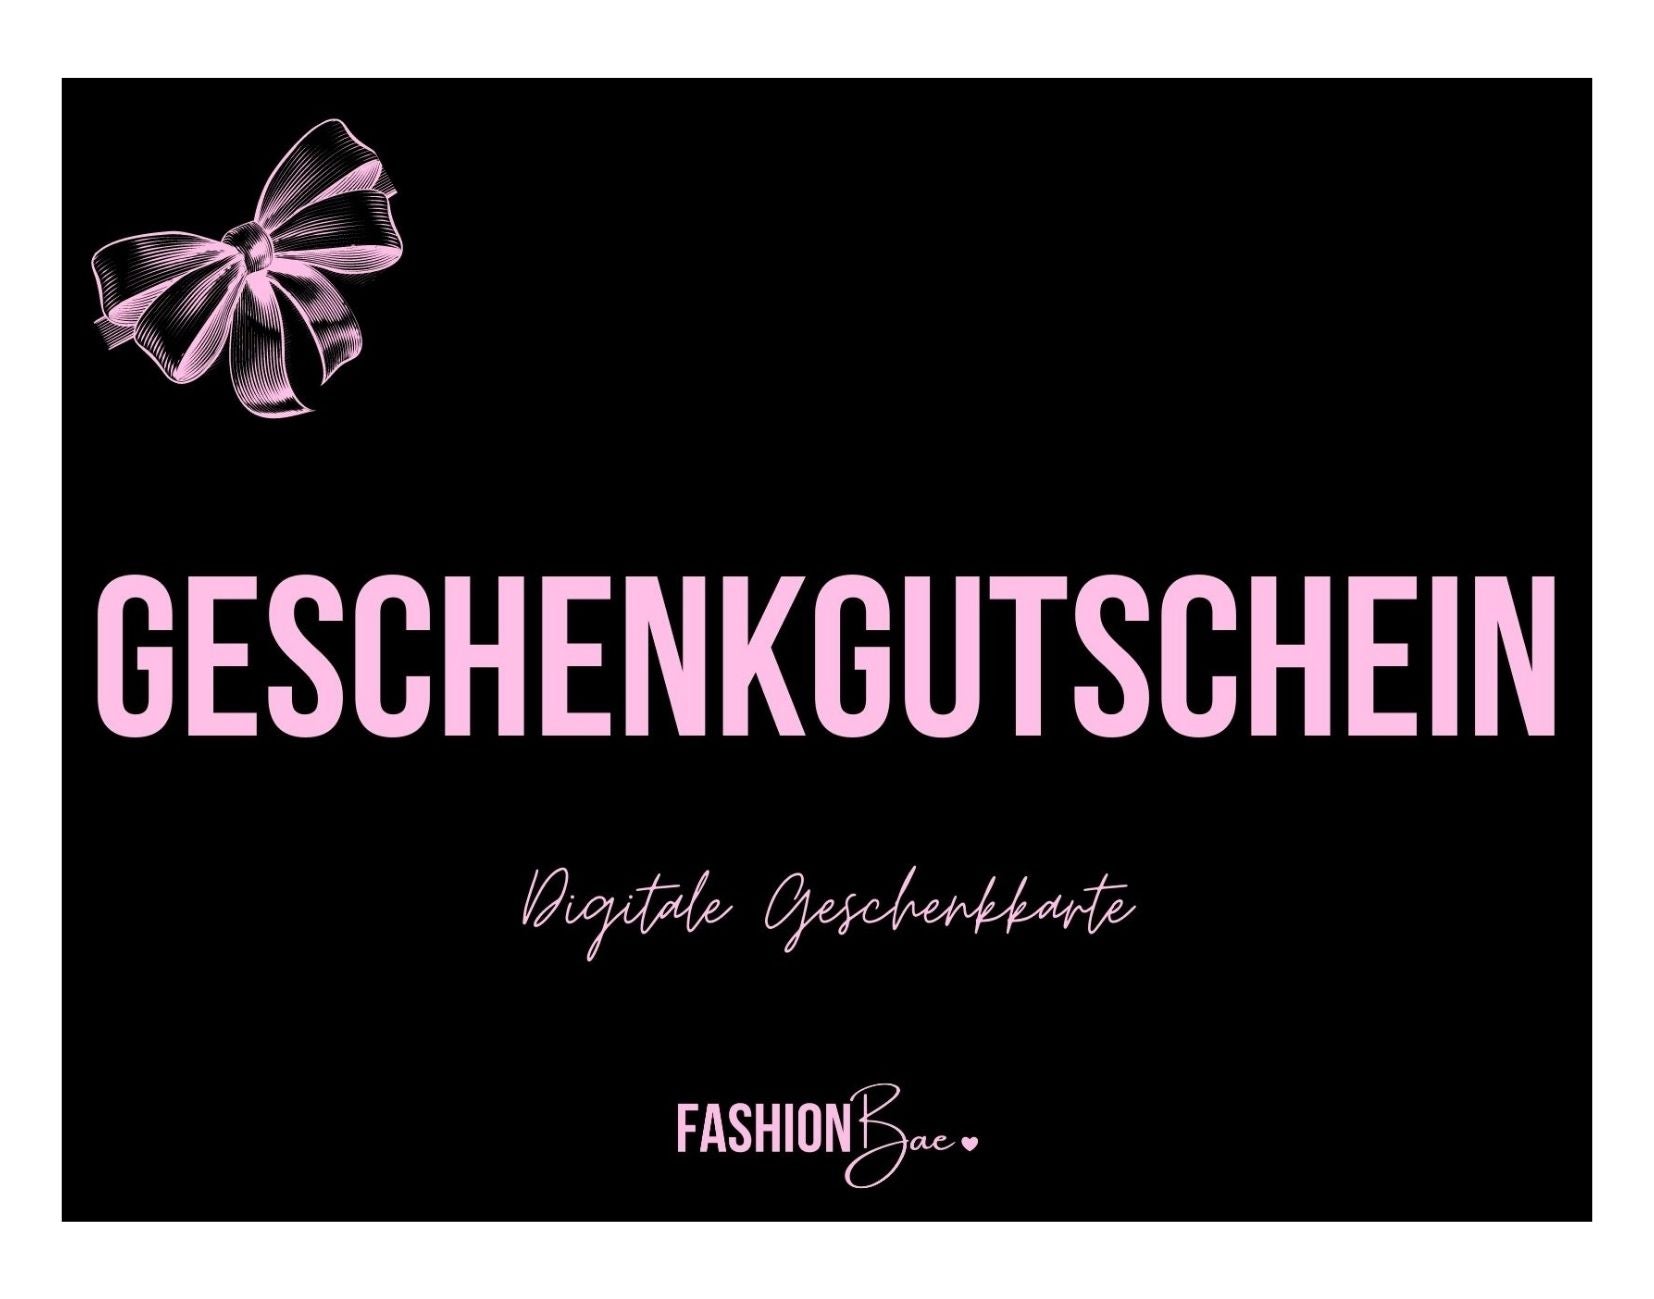 Fashionbae Geschenkgutschein - CHF 100.00 - 